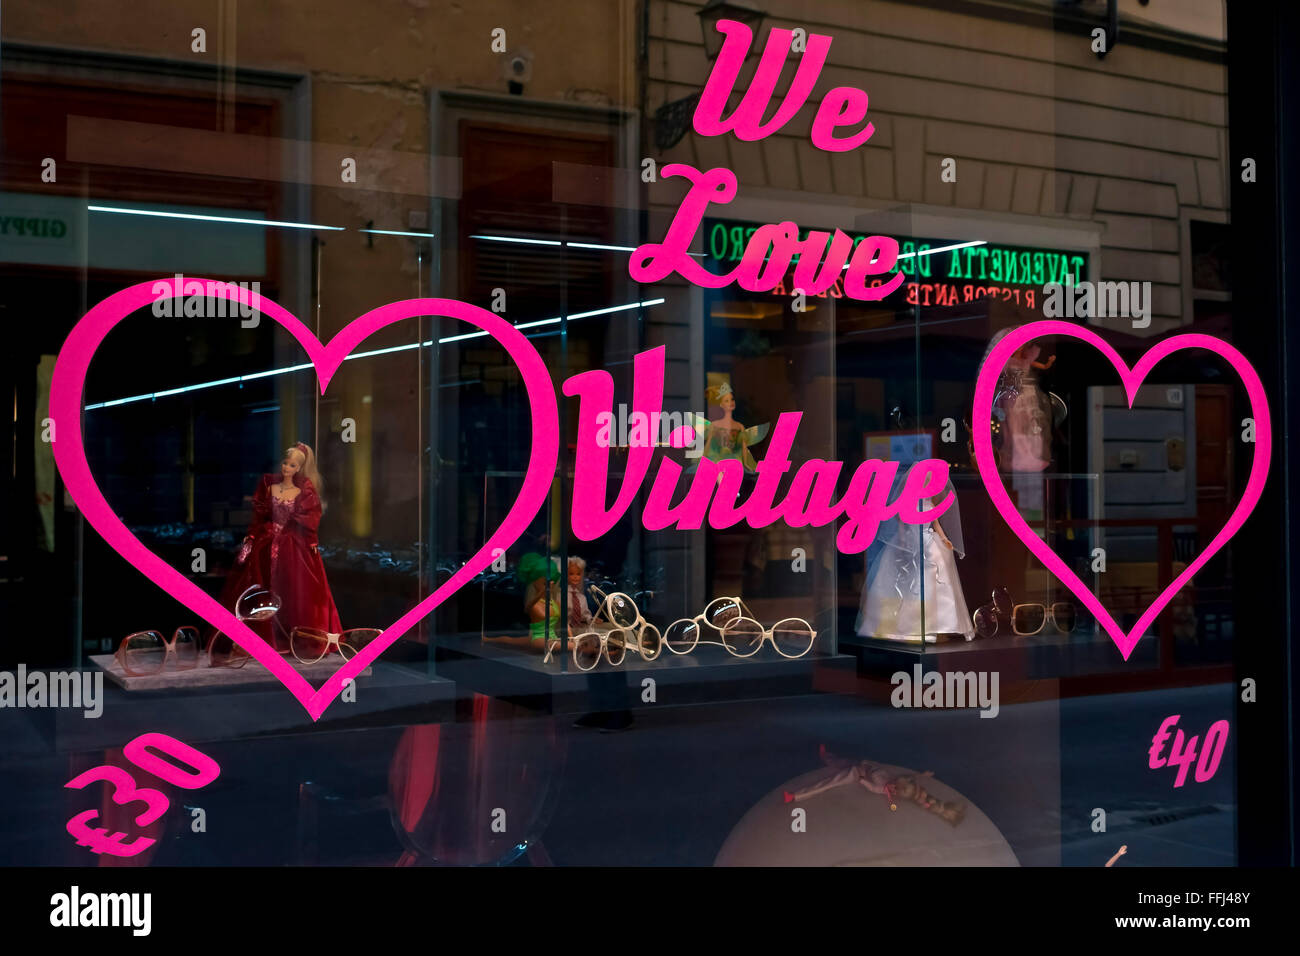 Wir lieben Shopping-Schild auf einer Brille Schaufenster. Optiker Laden vor. Florenz, Toskana, Mittelitalien, Europa, Europäische Union, EU. Stockfoto